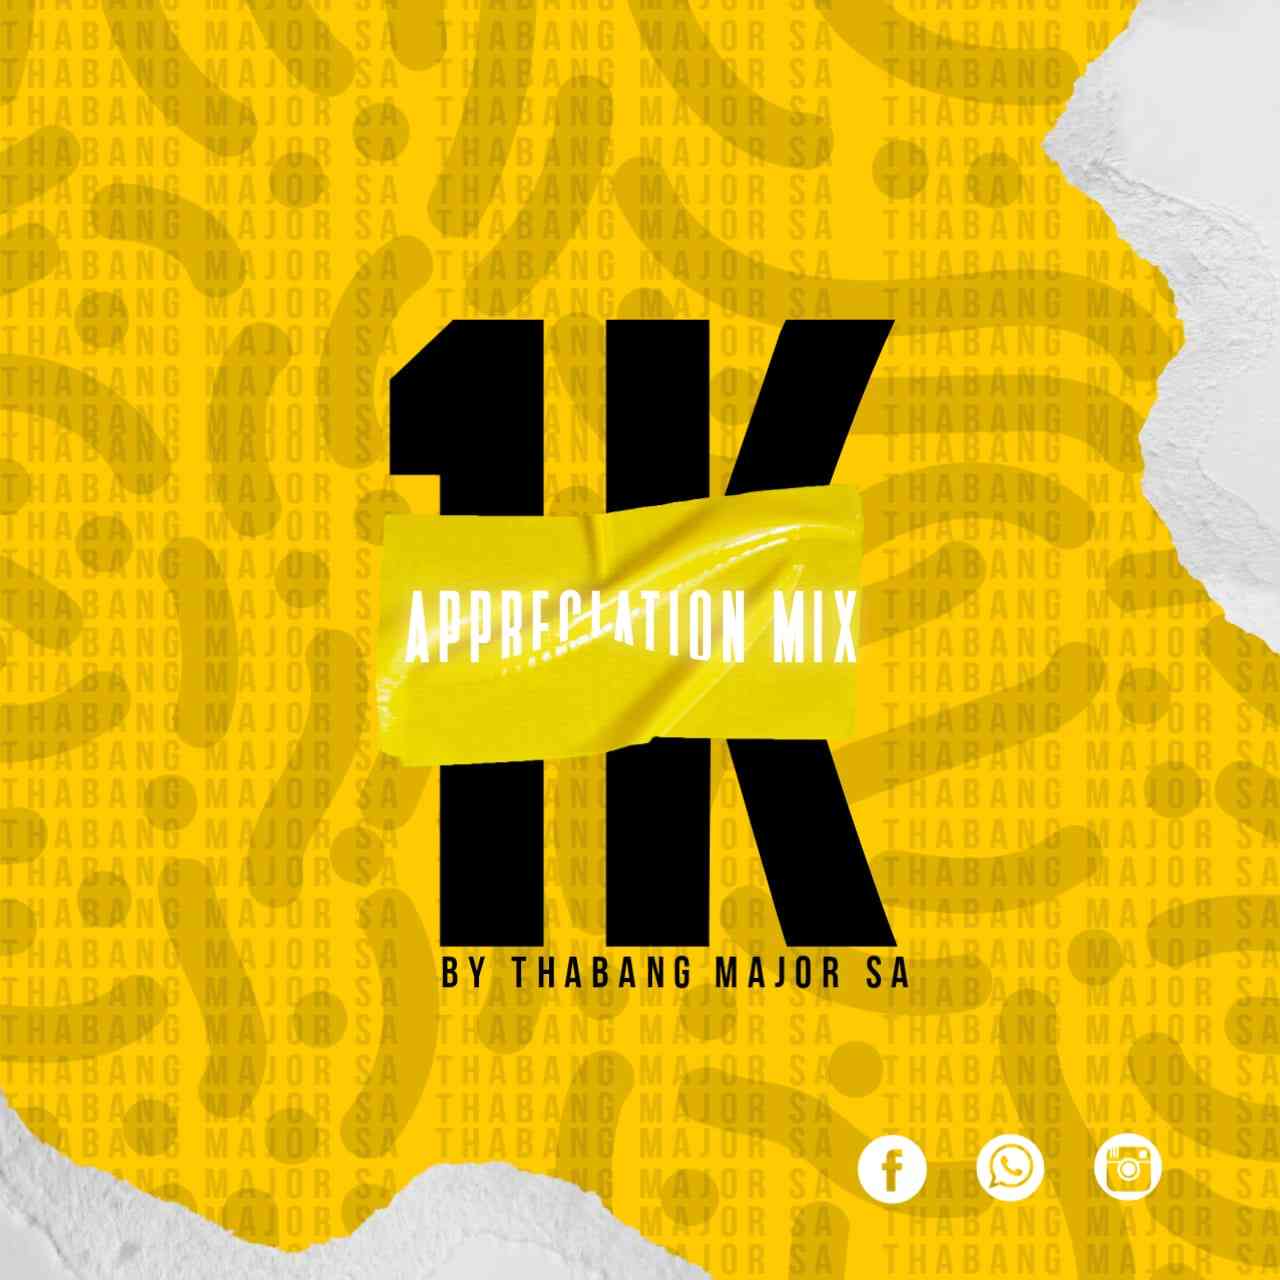 Thabang Major 1K Appreciation Mix